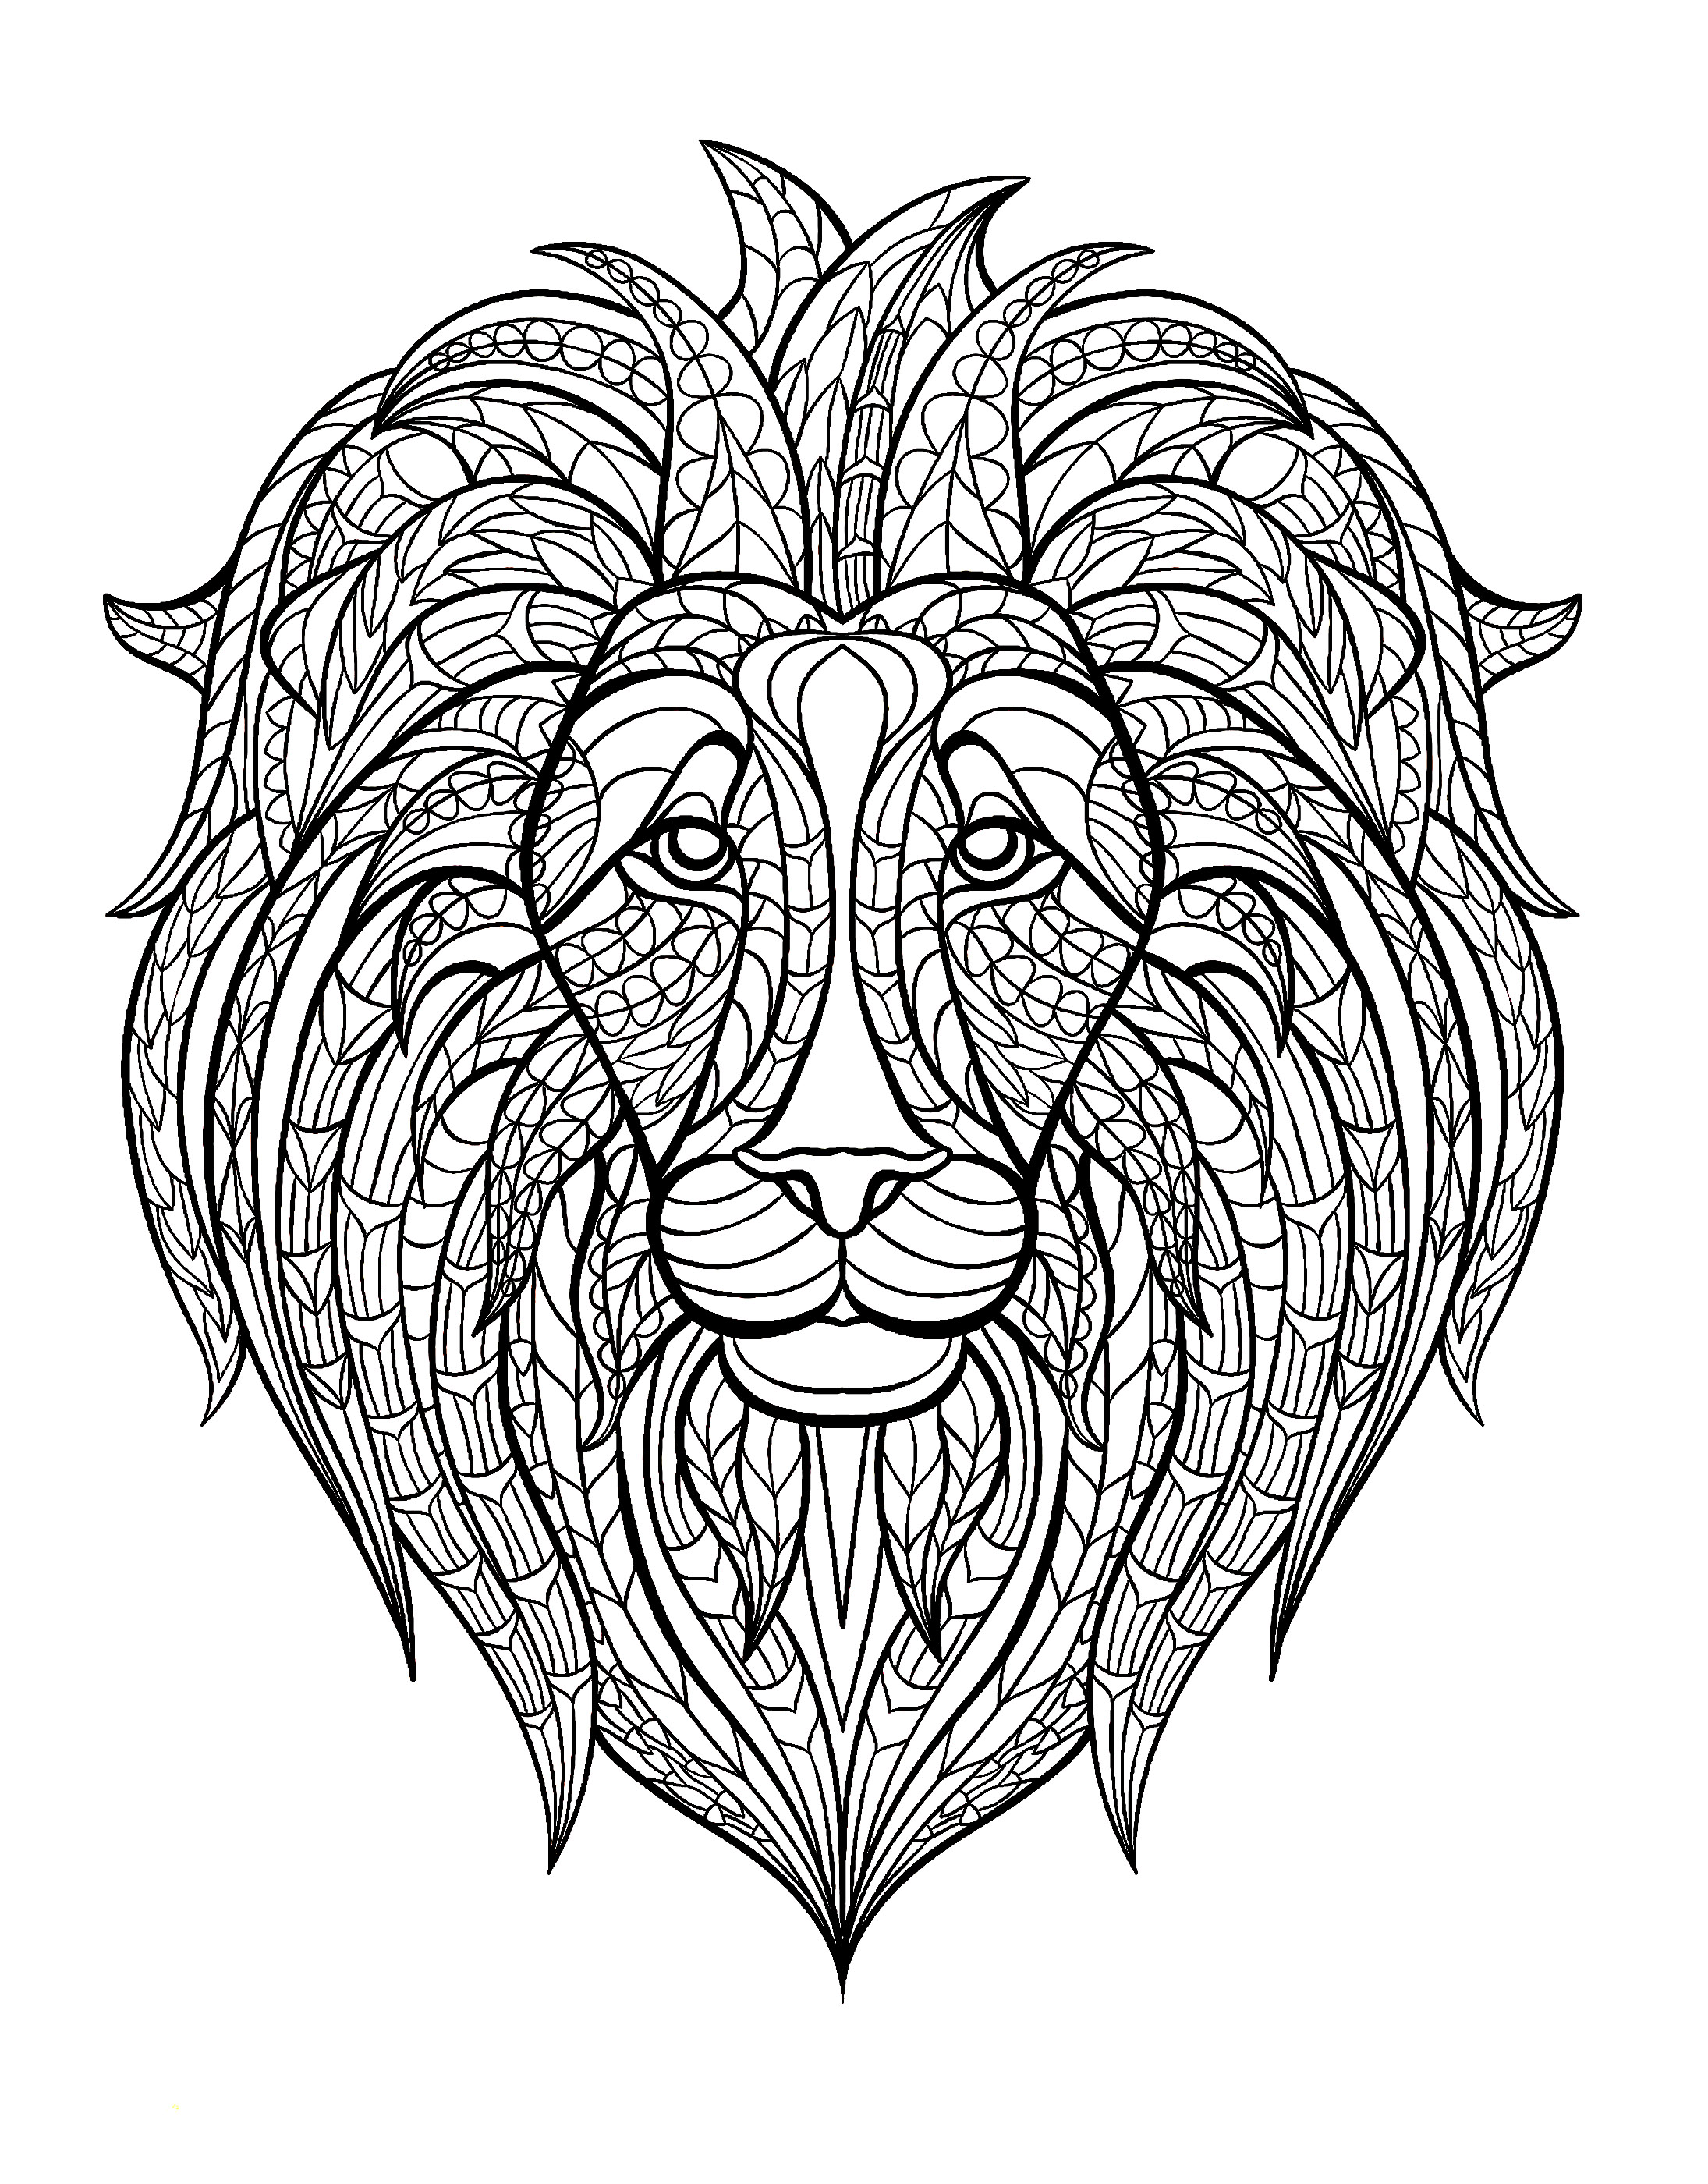 Afrique tete lion